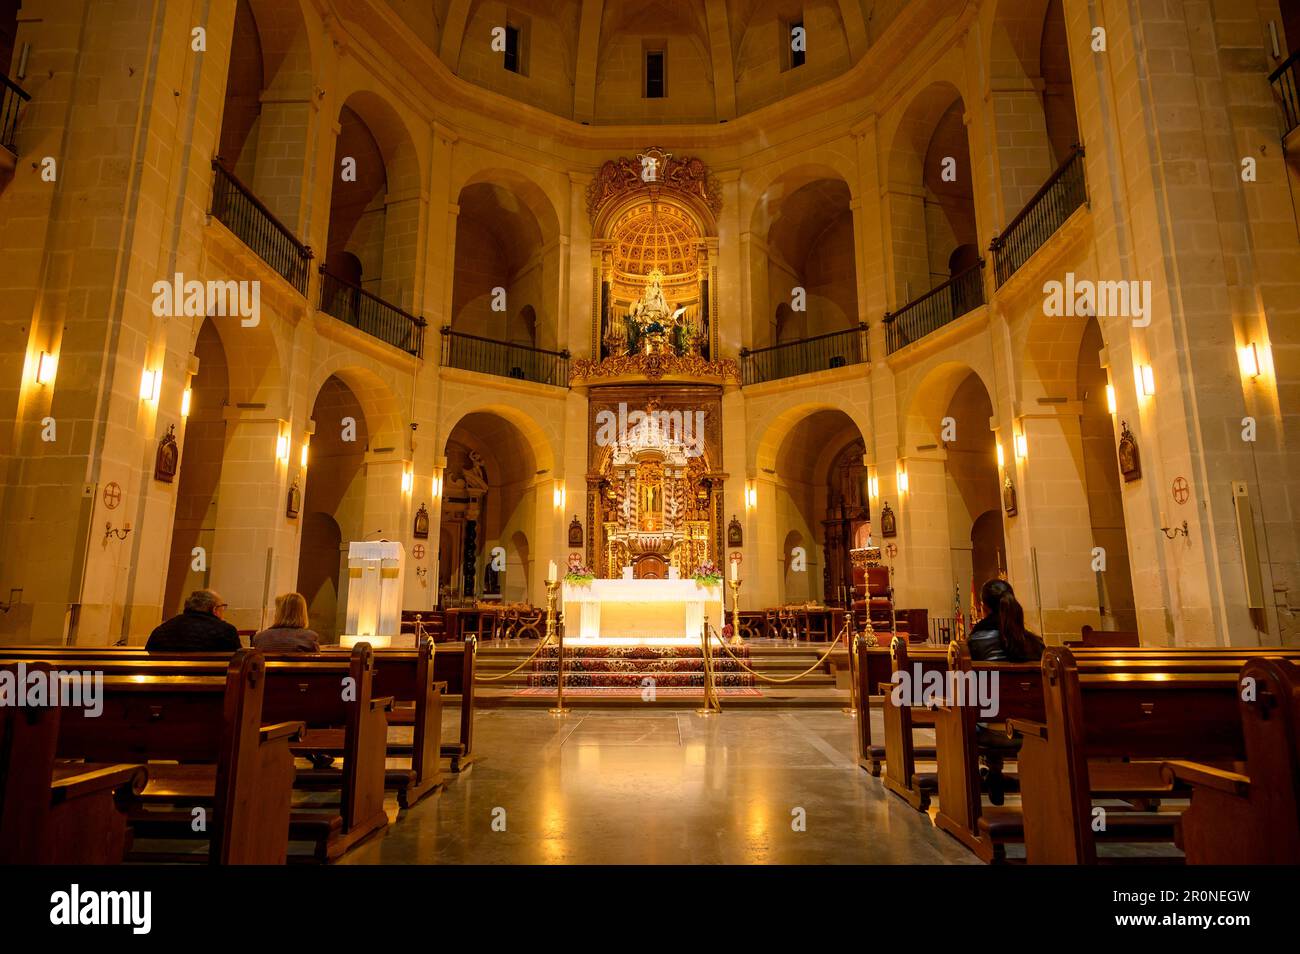 Menschen, die nachts in der Kathedrale von St. Nicolas de Bari beten. Symmetrie von Altar, Säulen und Bänken. Der Altar an der Front. Stockfoto